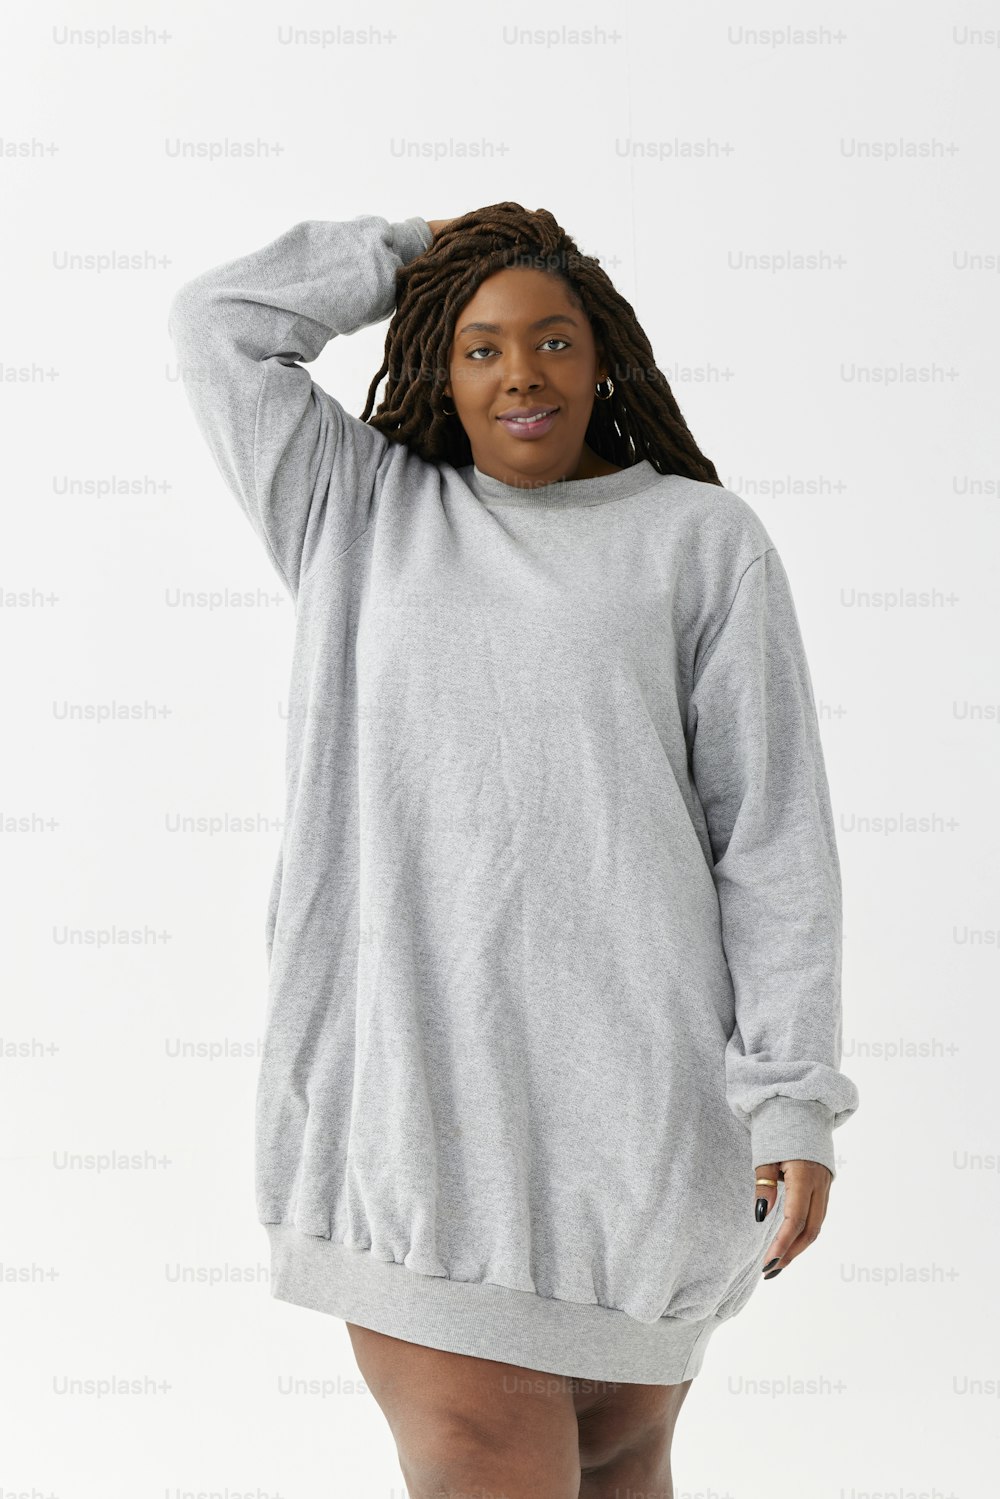 a woman in a grey sweatshirt dress